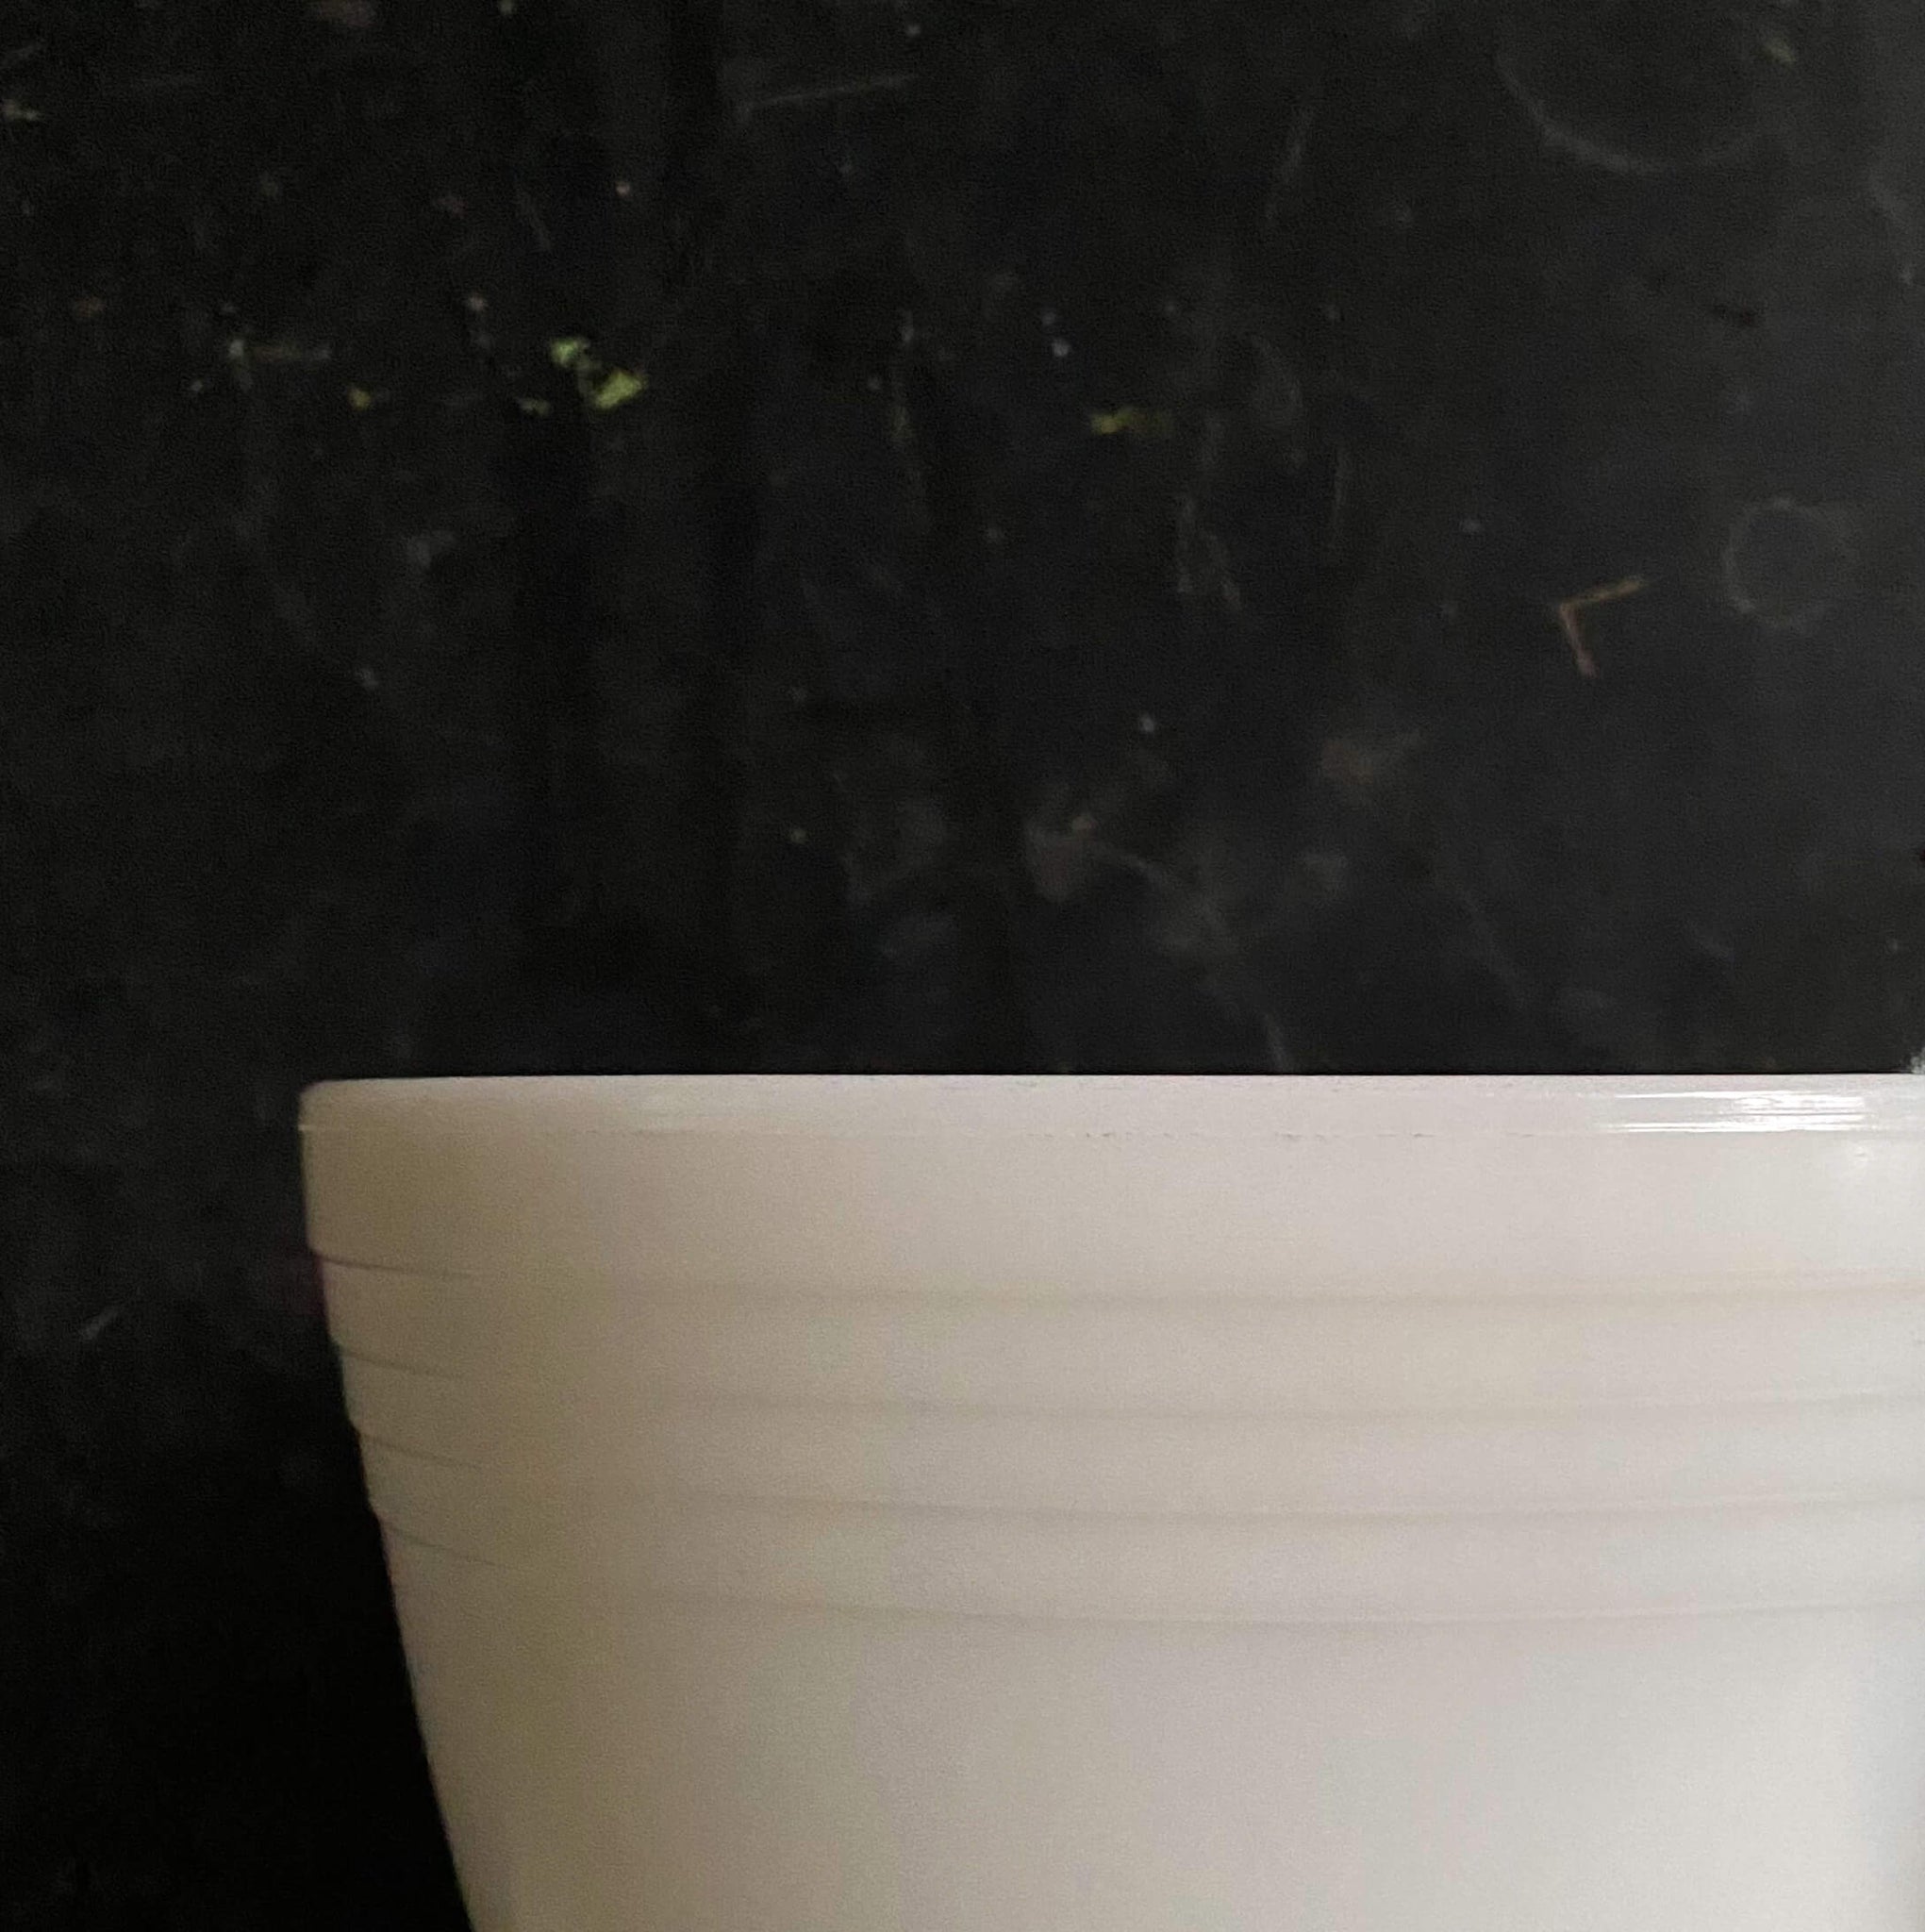 Vintage Pyrex White Glass Hamilton Beach Small Mixing Bowl w Pour Spout 6  1/4